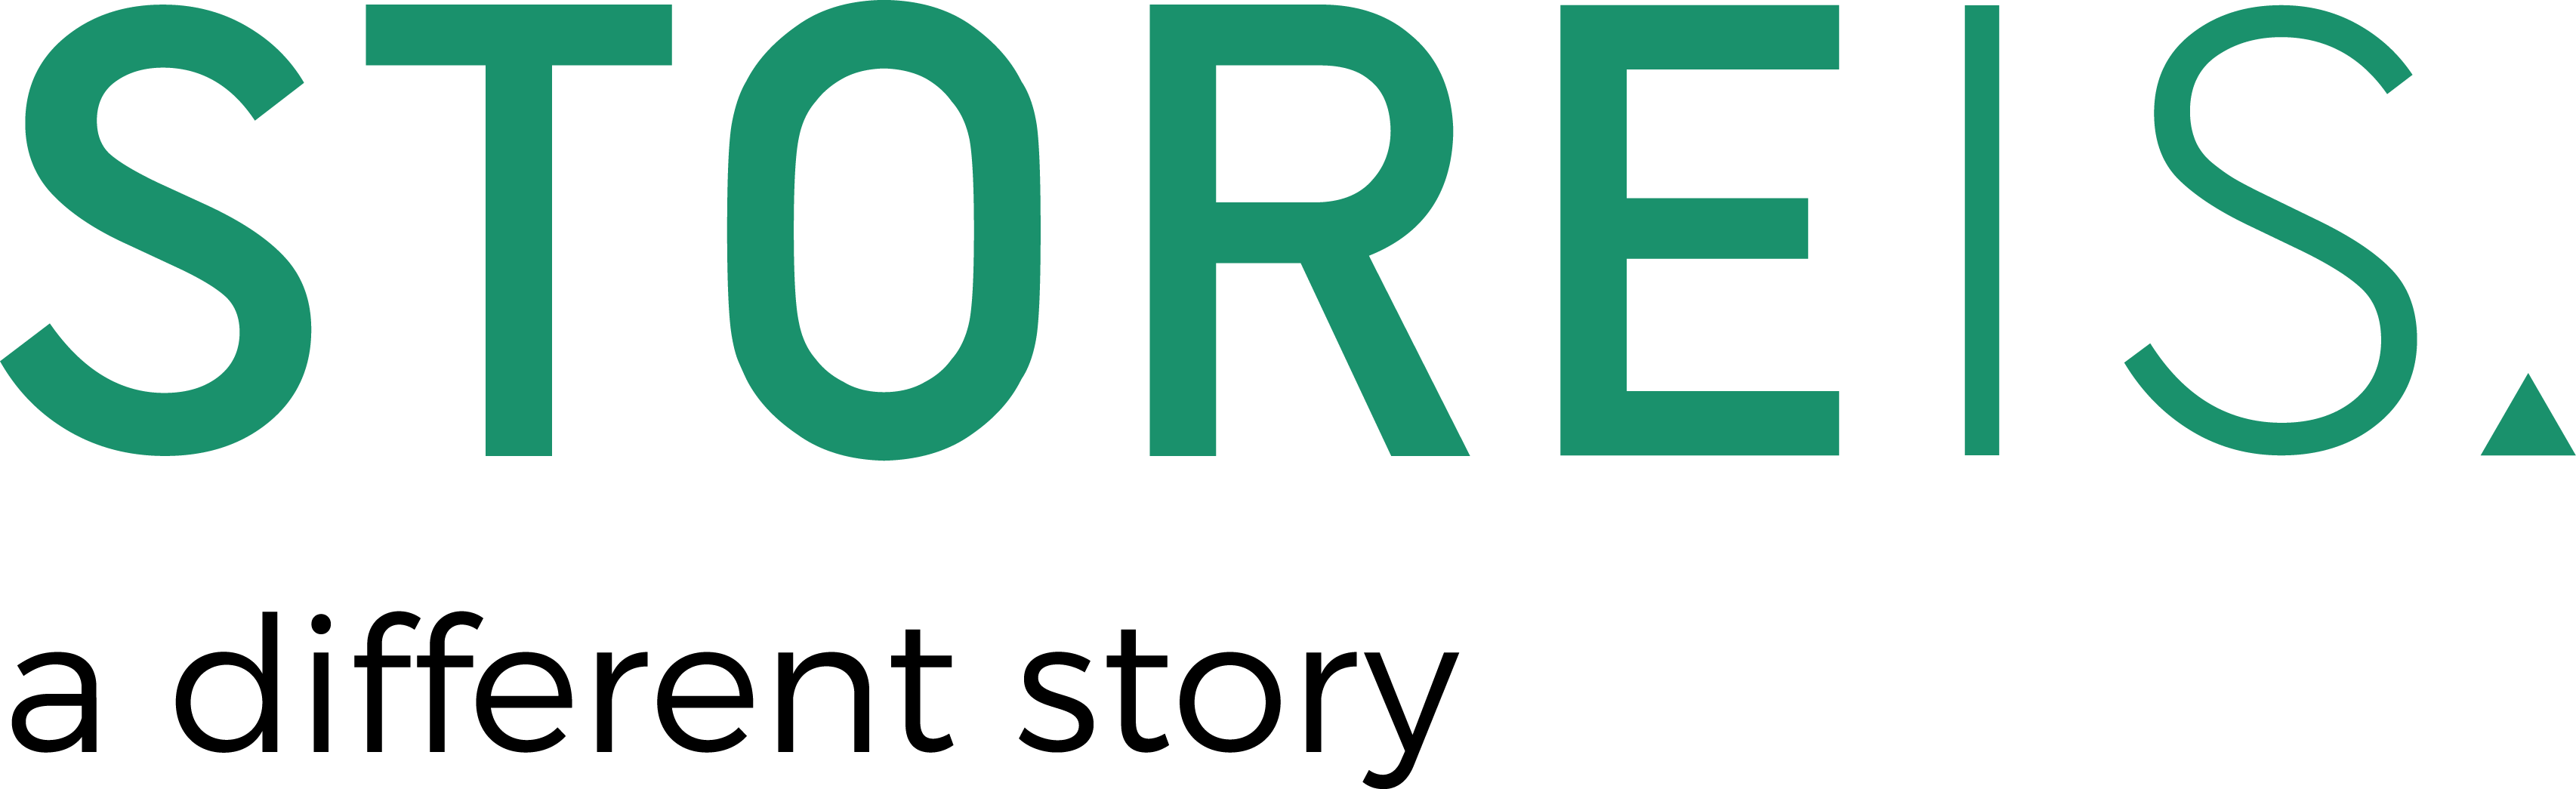 Storeis logo